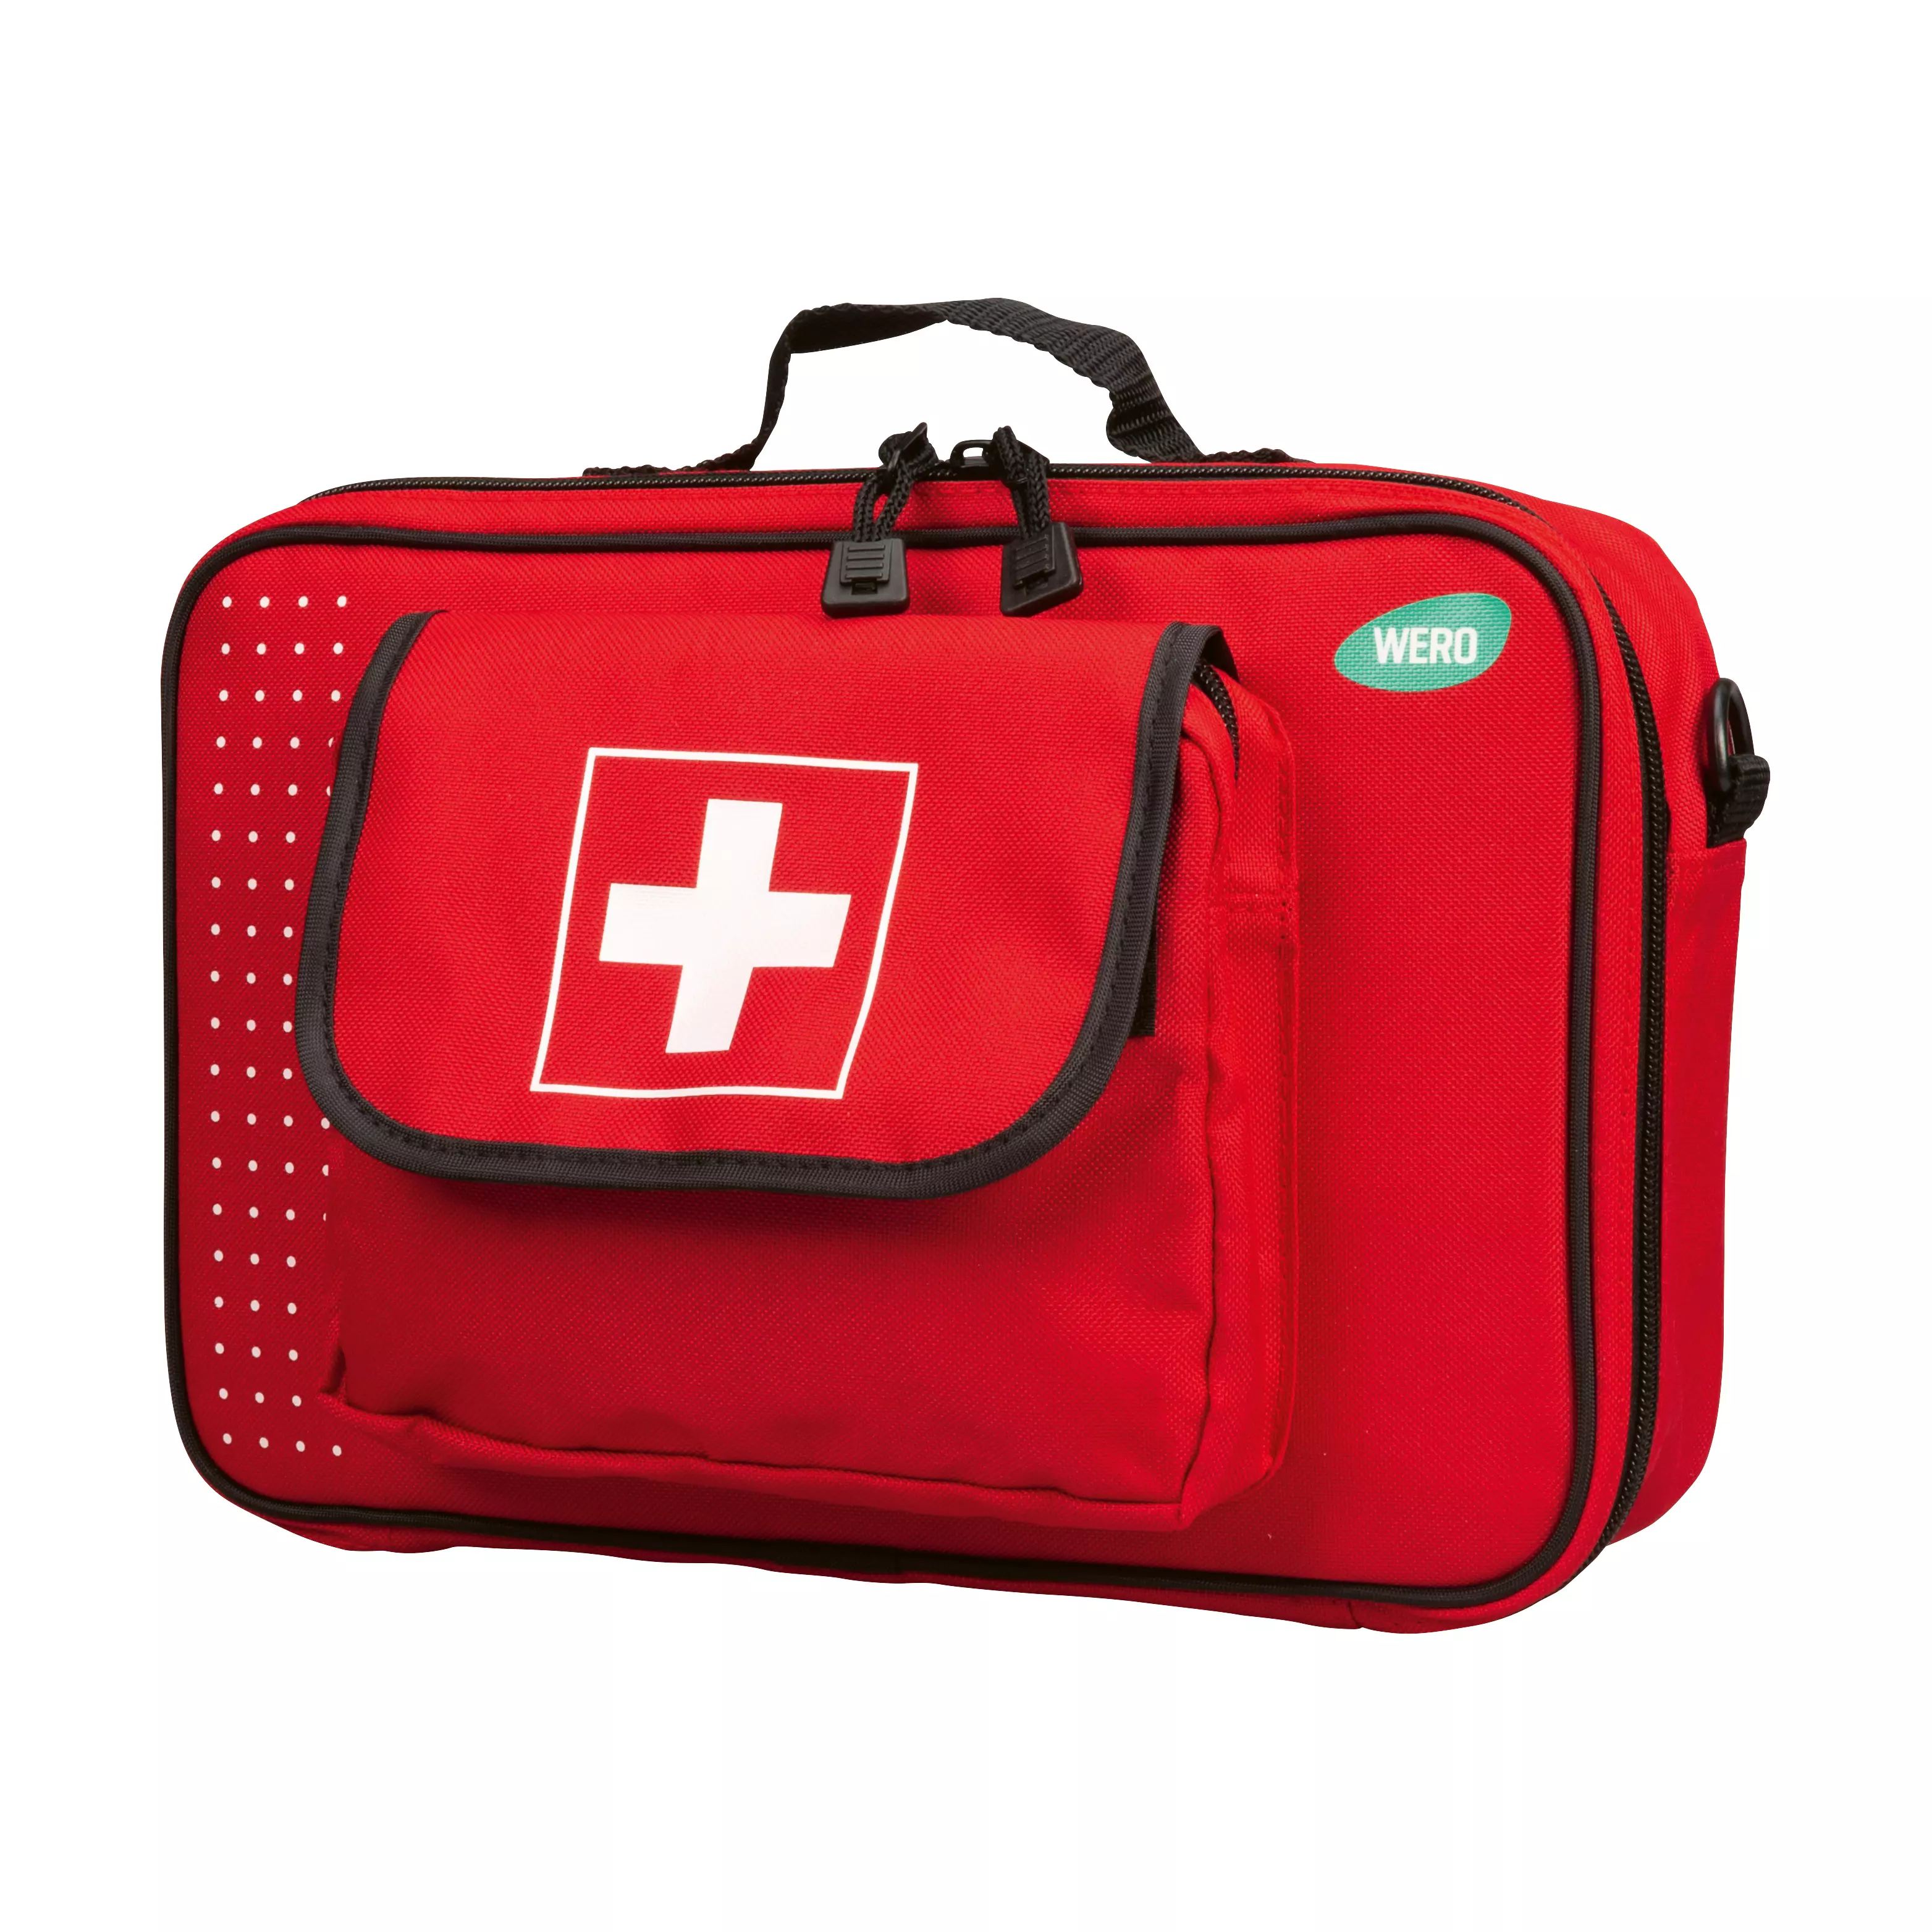 WERO Erste-Hilfe-Tasche, gefüllt nach DIN13157 erweitert - Taschen -  MedTrade